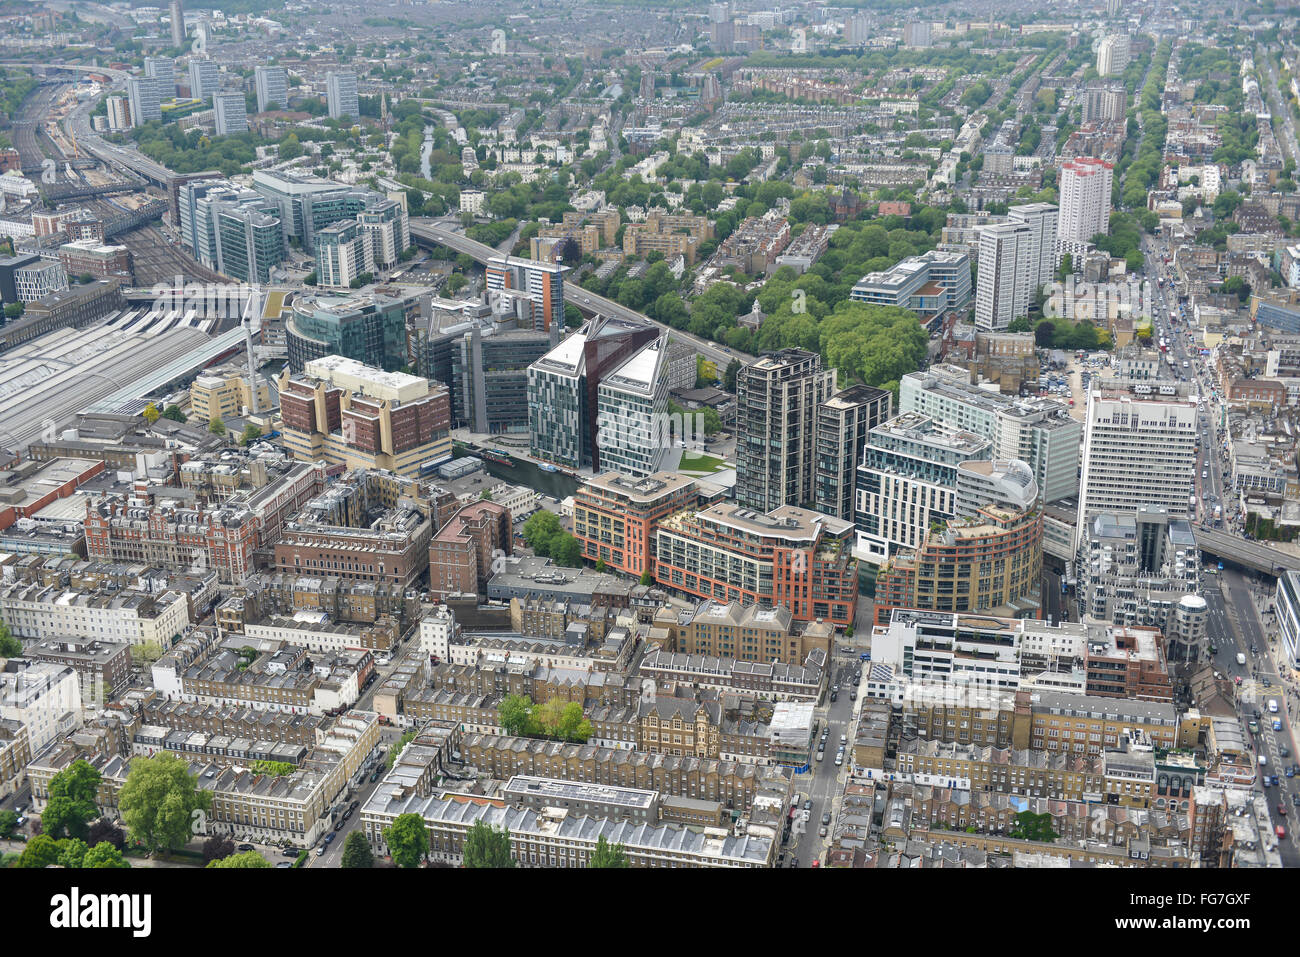 Eine Luftaufnahme des Beckens Paddington in London vor kurzem saniert mit neuen Wohnungen und Büroflächen Stockfoto